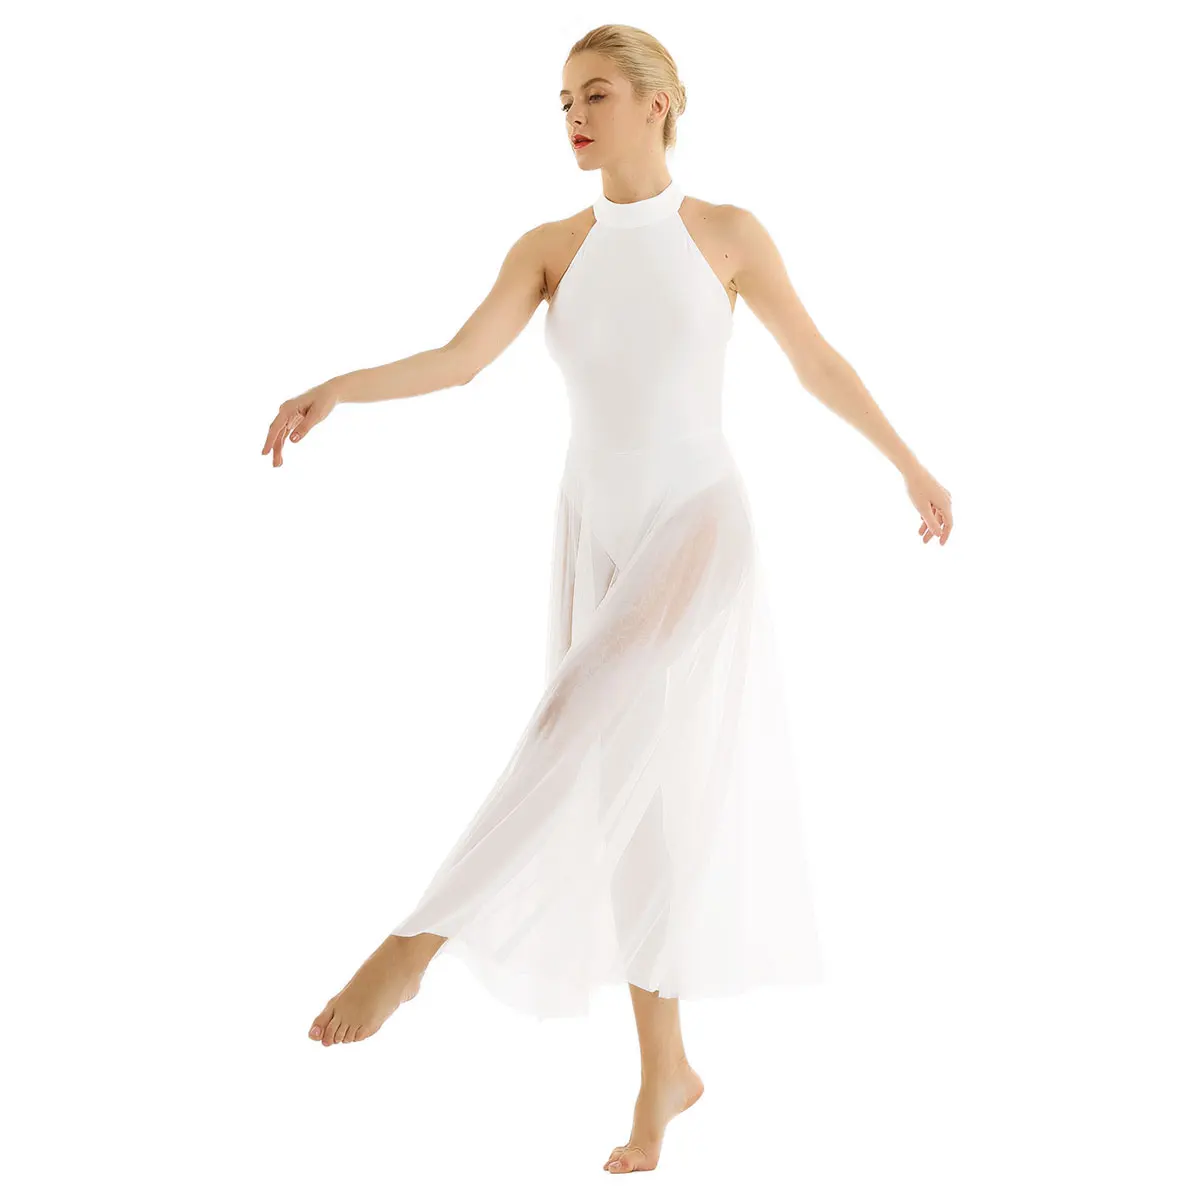 Женское взрослое балетное танцевальное платье, современное трико, балетное боди с сетчатой юбкой, балетное трико с имитацией шеи для женщин